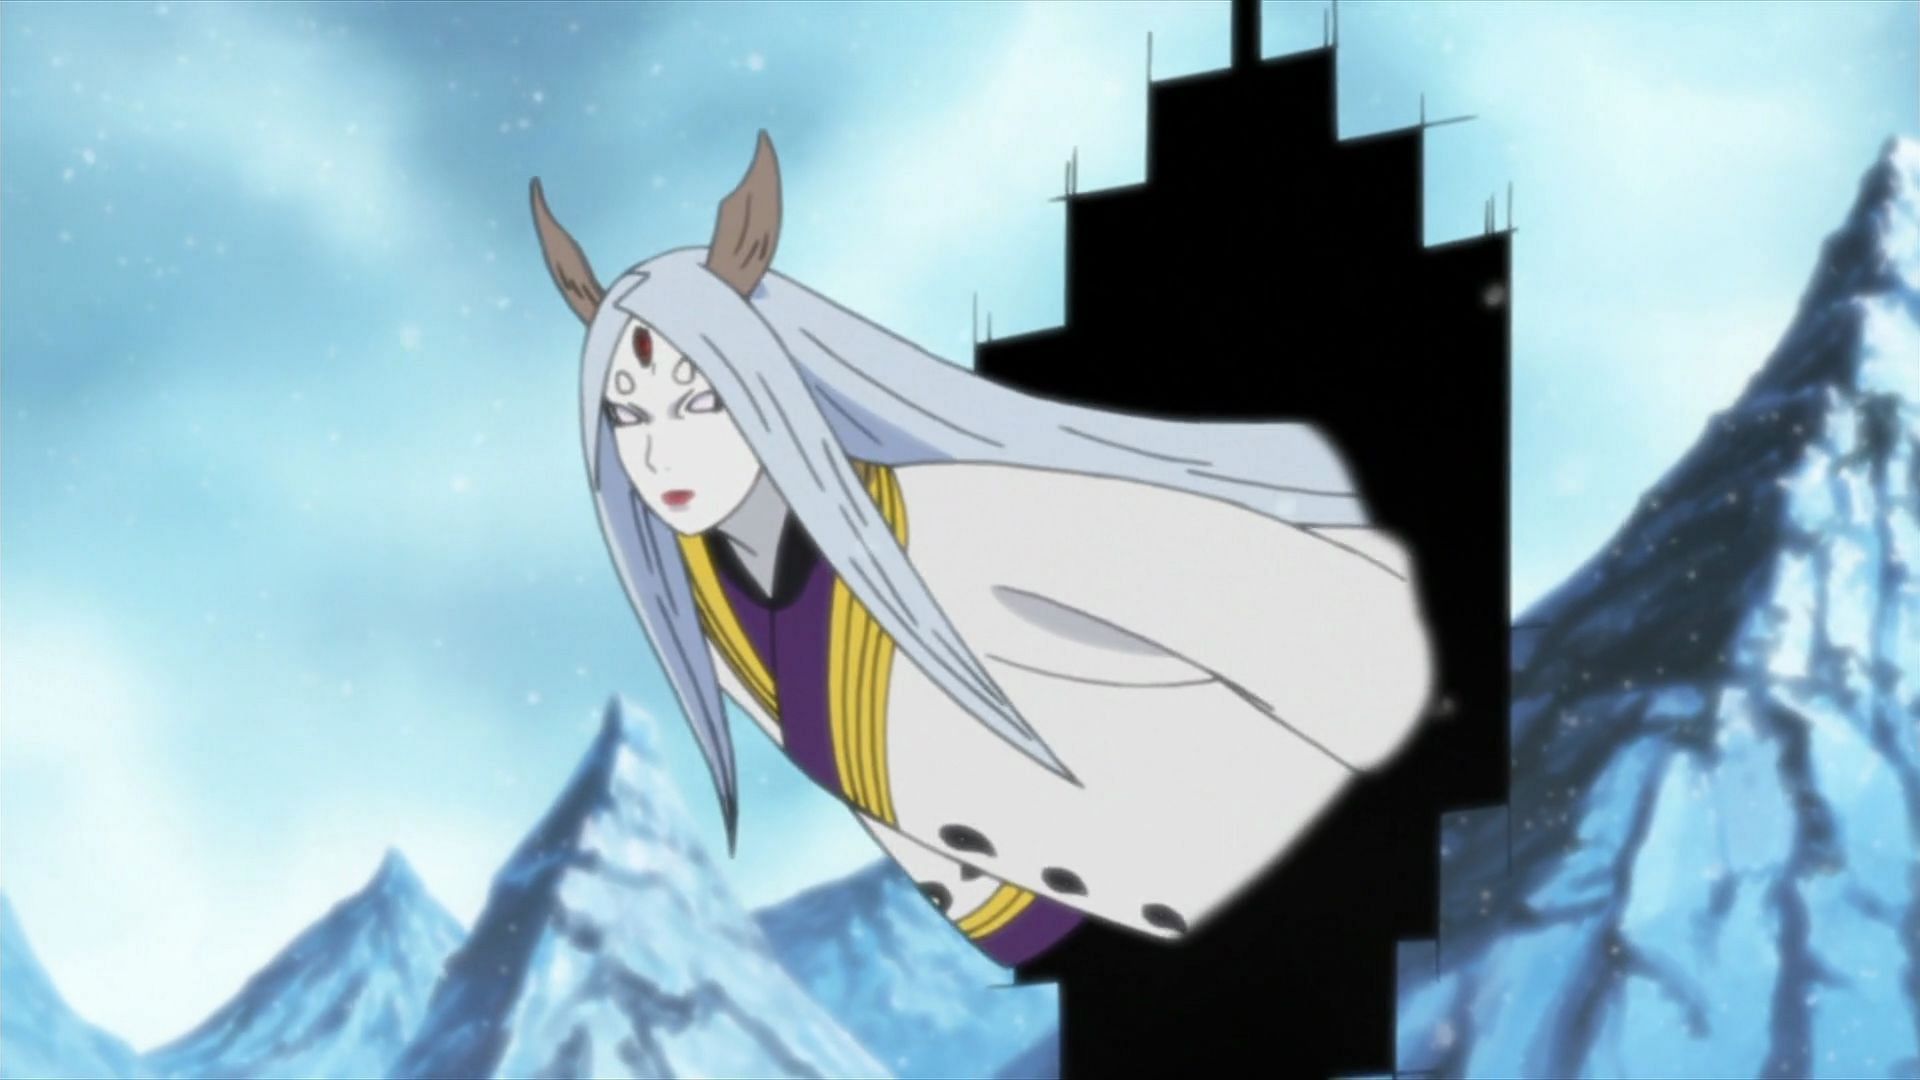 Kaguya as seen in the anime (Image via Masashi Kishimoto/Shueisha, Viz Media, Naruto Shippuden)